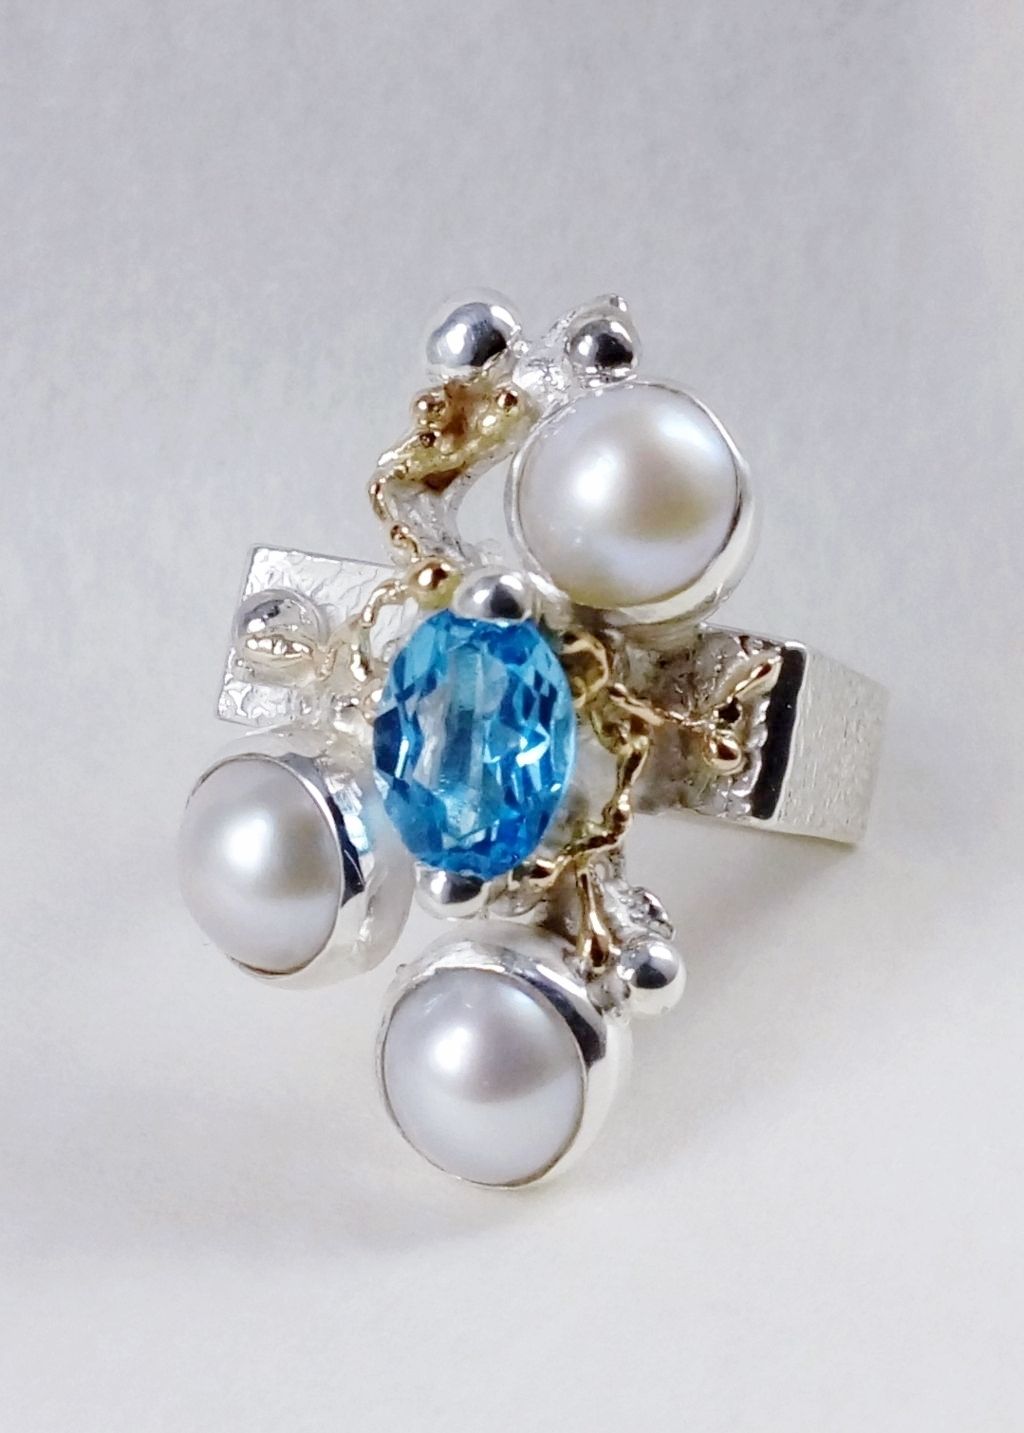 Gregory Pyra Piro řemeslník vyrobil stříbrný a zlatý prsten čís. 8391, řemeslný ručně vyráběný čtvercový prsten s modrým topazem a perlami